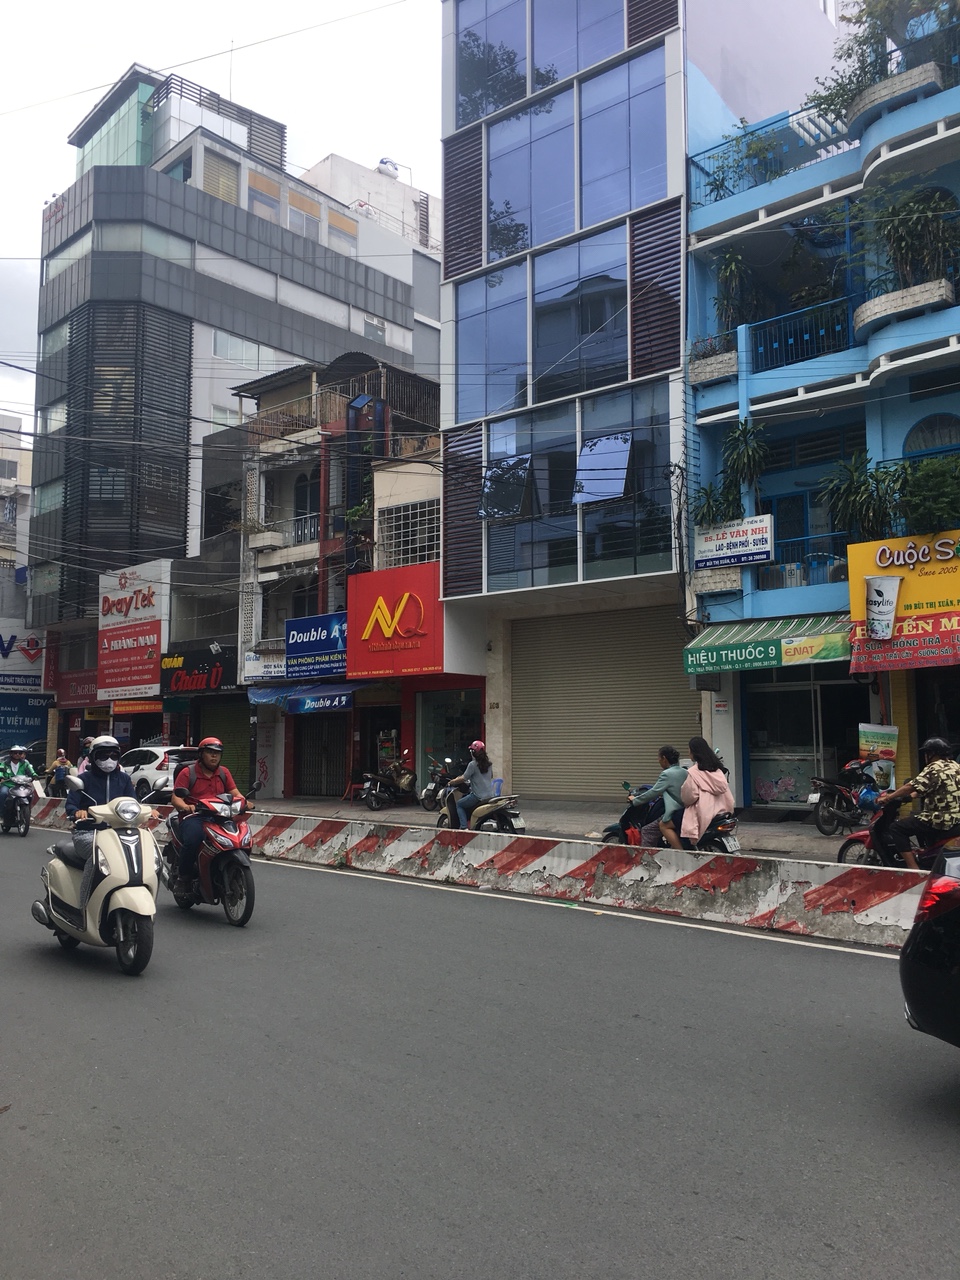 Bán nhà số 8 Nguyễn Thị Nghĩa, P. Bến Thành, Quận 1.Trung Tâm Sài Gòn LH 0902.542.538 Trần Tiến